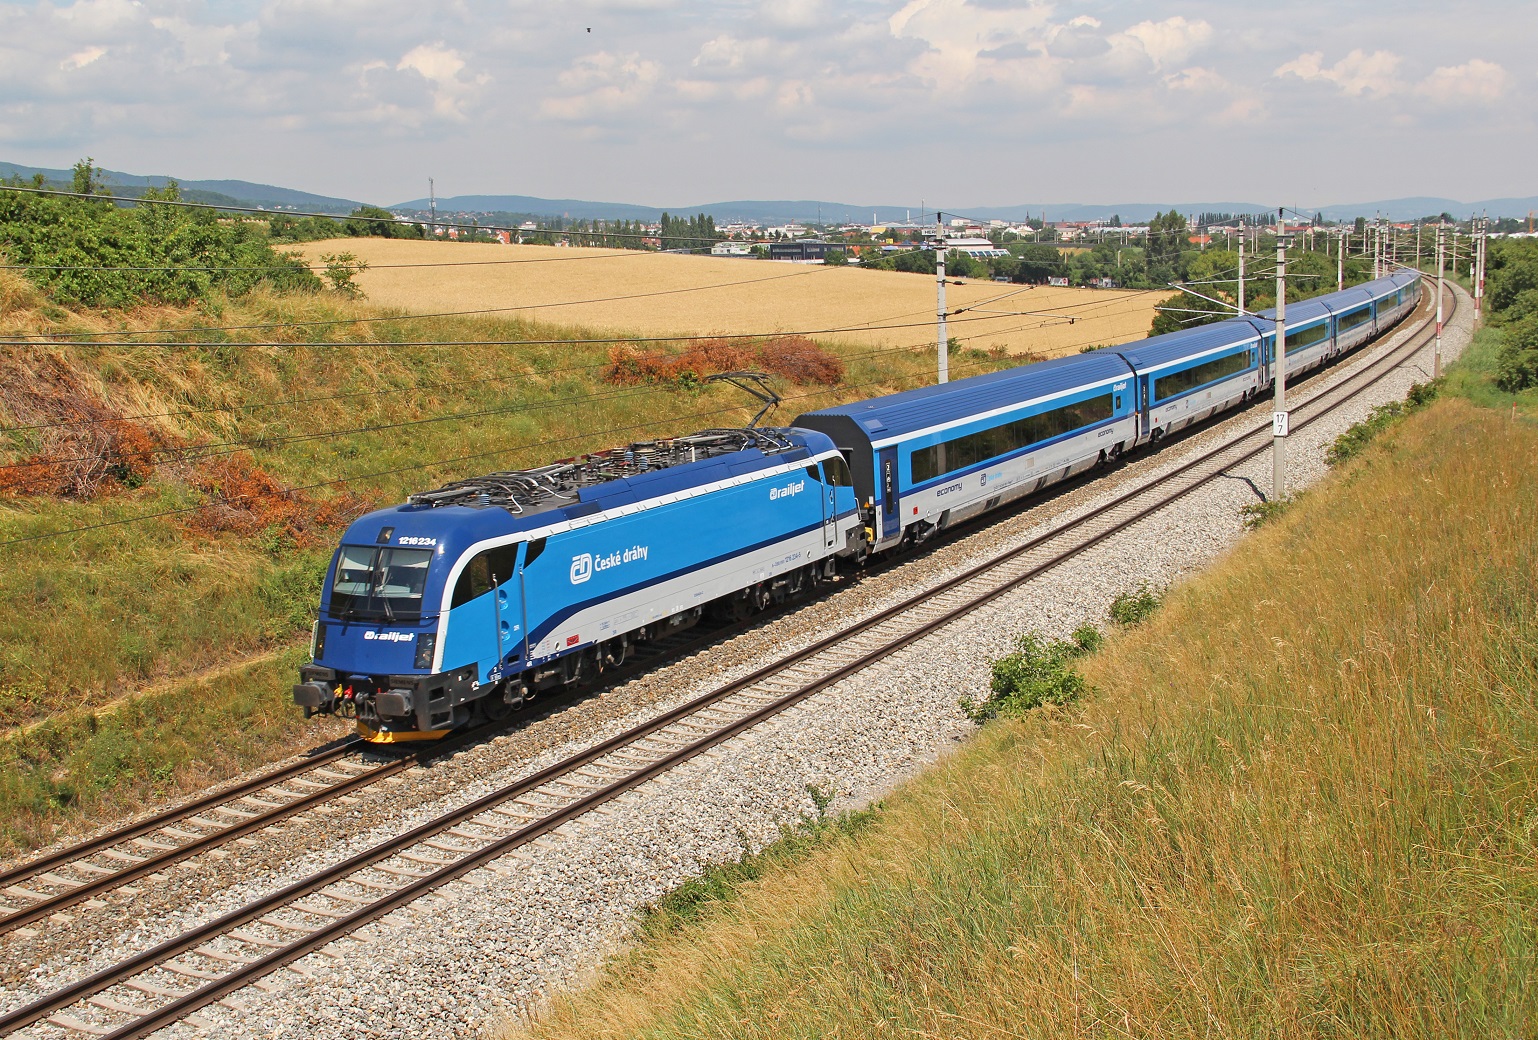 ČD-RJ im Einsatz zwischen Prag und Österreich - Foto: NÖLB Mh, CD-RJ als EC 73, CC BY-SA 3.0